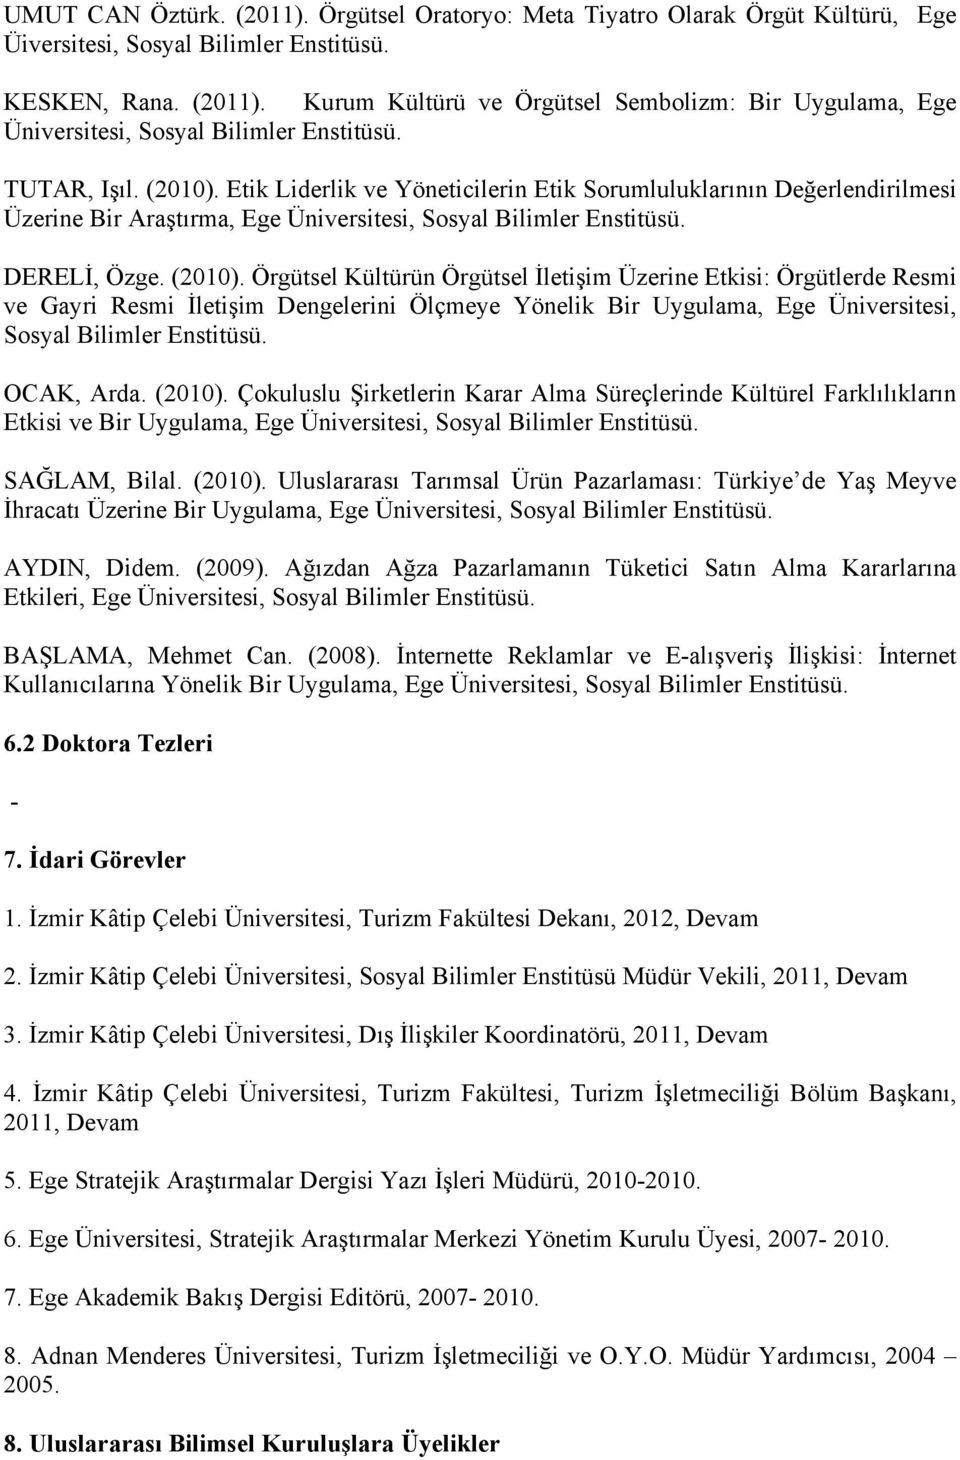 OCAK, Arda. (2010). Çokuluslu Şirketlerin Karar Alma Süreçlerinde Kültürel Farklılıkların Etkisi ve Bir Uygulama, Ege Üniversitesi, Sosyal Bilimler Enstitüsü. SAĞLAM, Bilal. (2010). Uluslararası Tarımsal Ürün Pazarlaması: Türkiye de Yaş Meyve İhracatı Üzerine Bir Uygulama, Ege Üniversitesi, Sosyal Bilimler Enstitüsü.